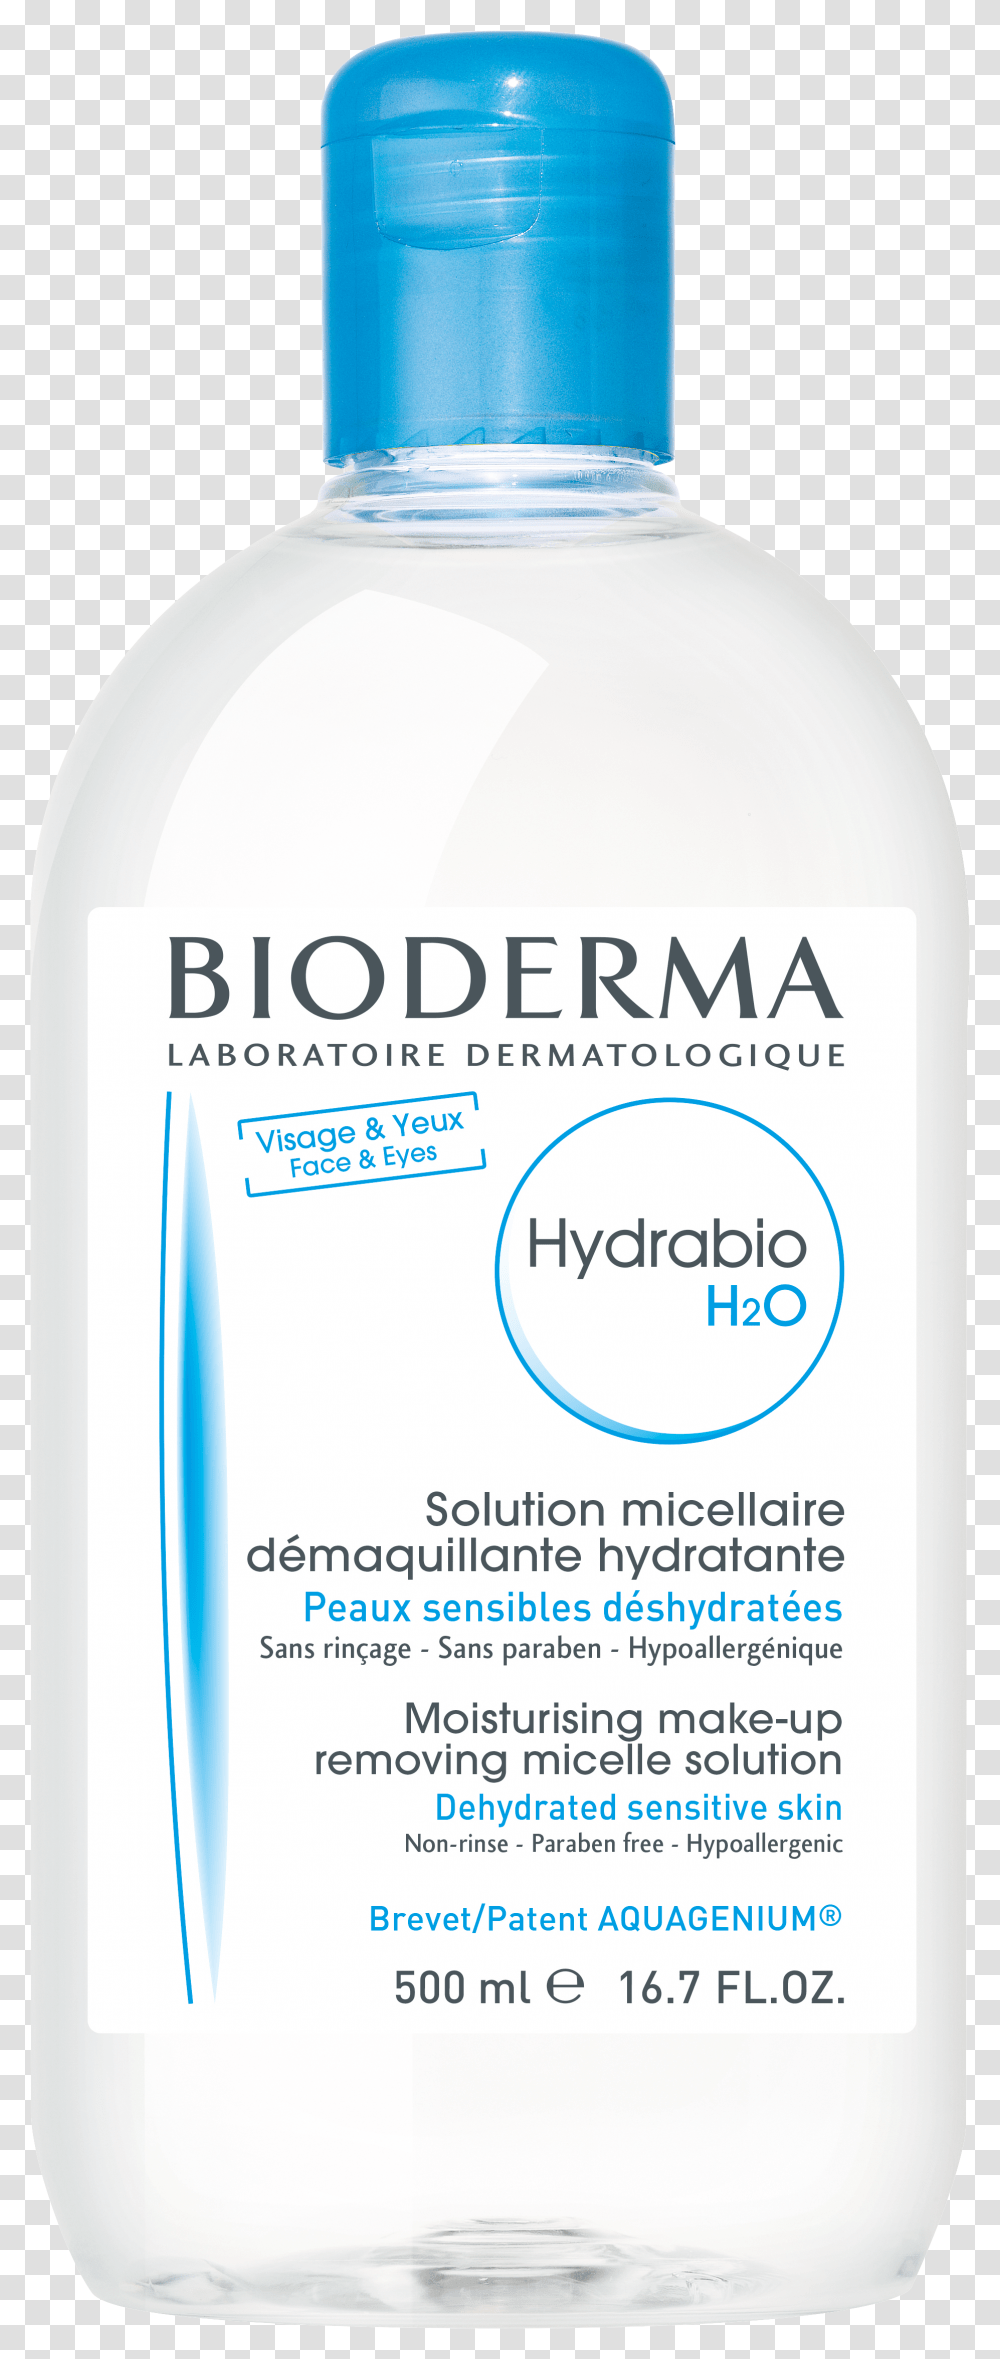 Bioderma Hydrabio H2o Bioderma Transparent Png